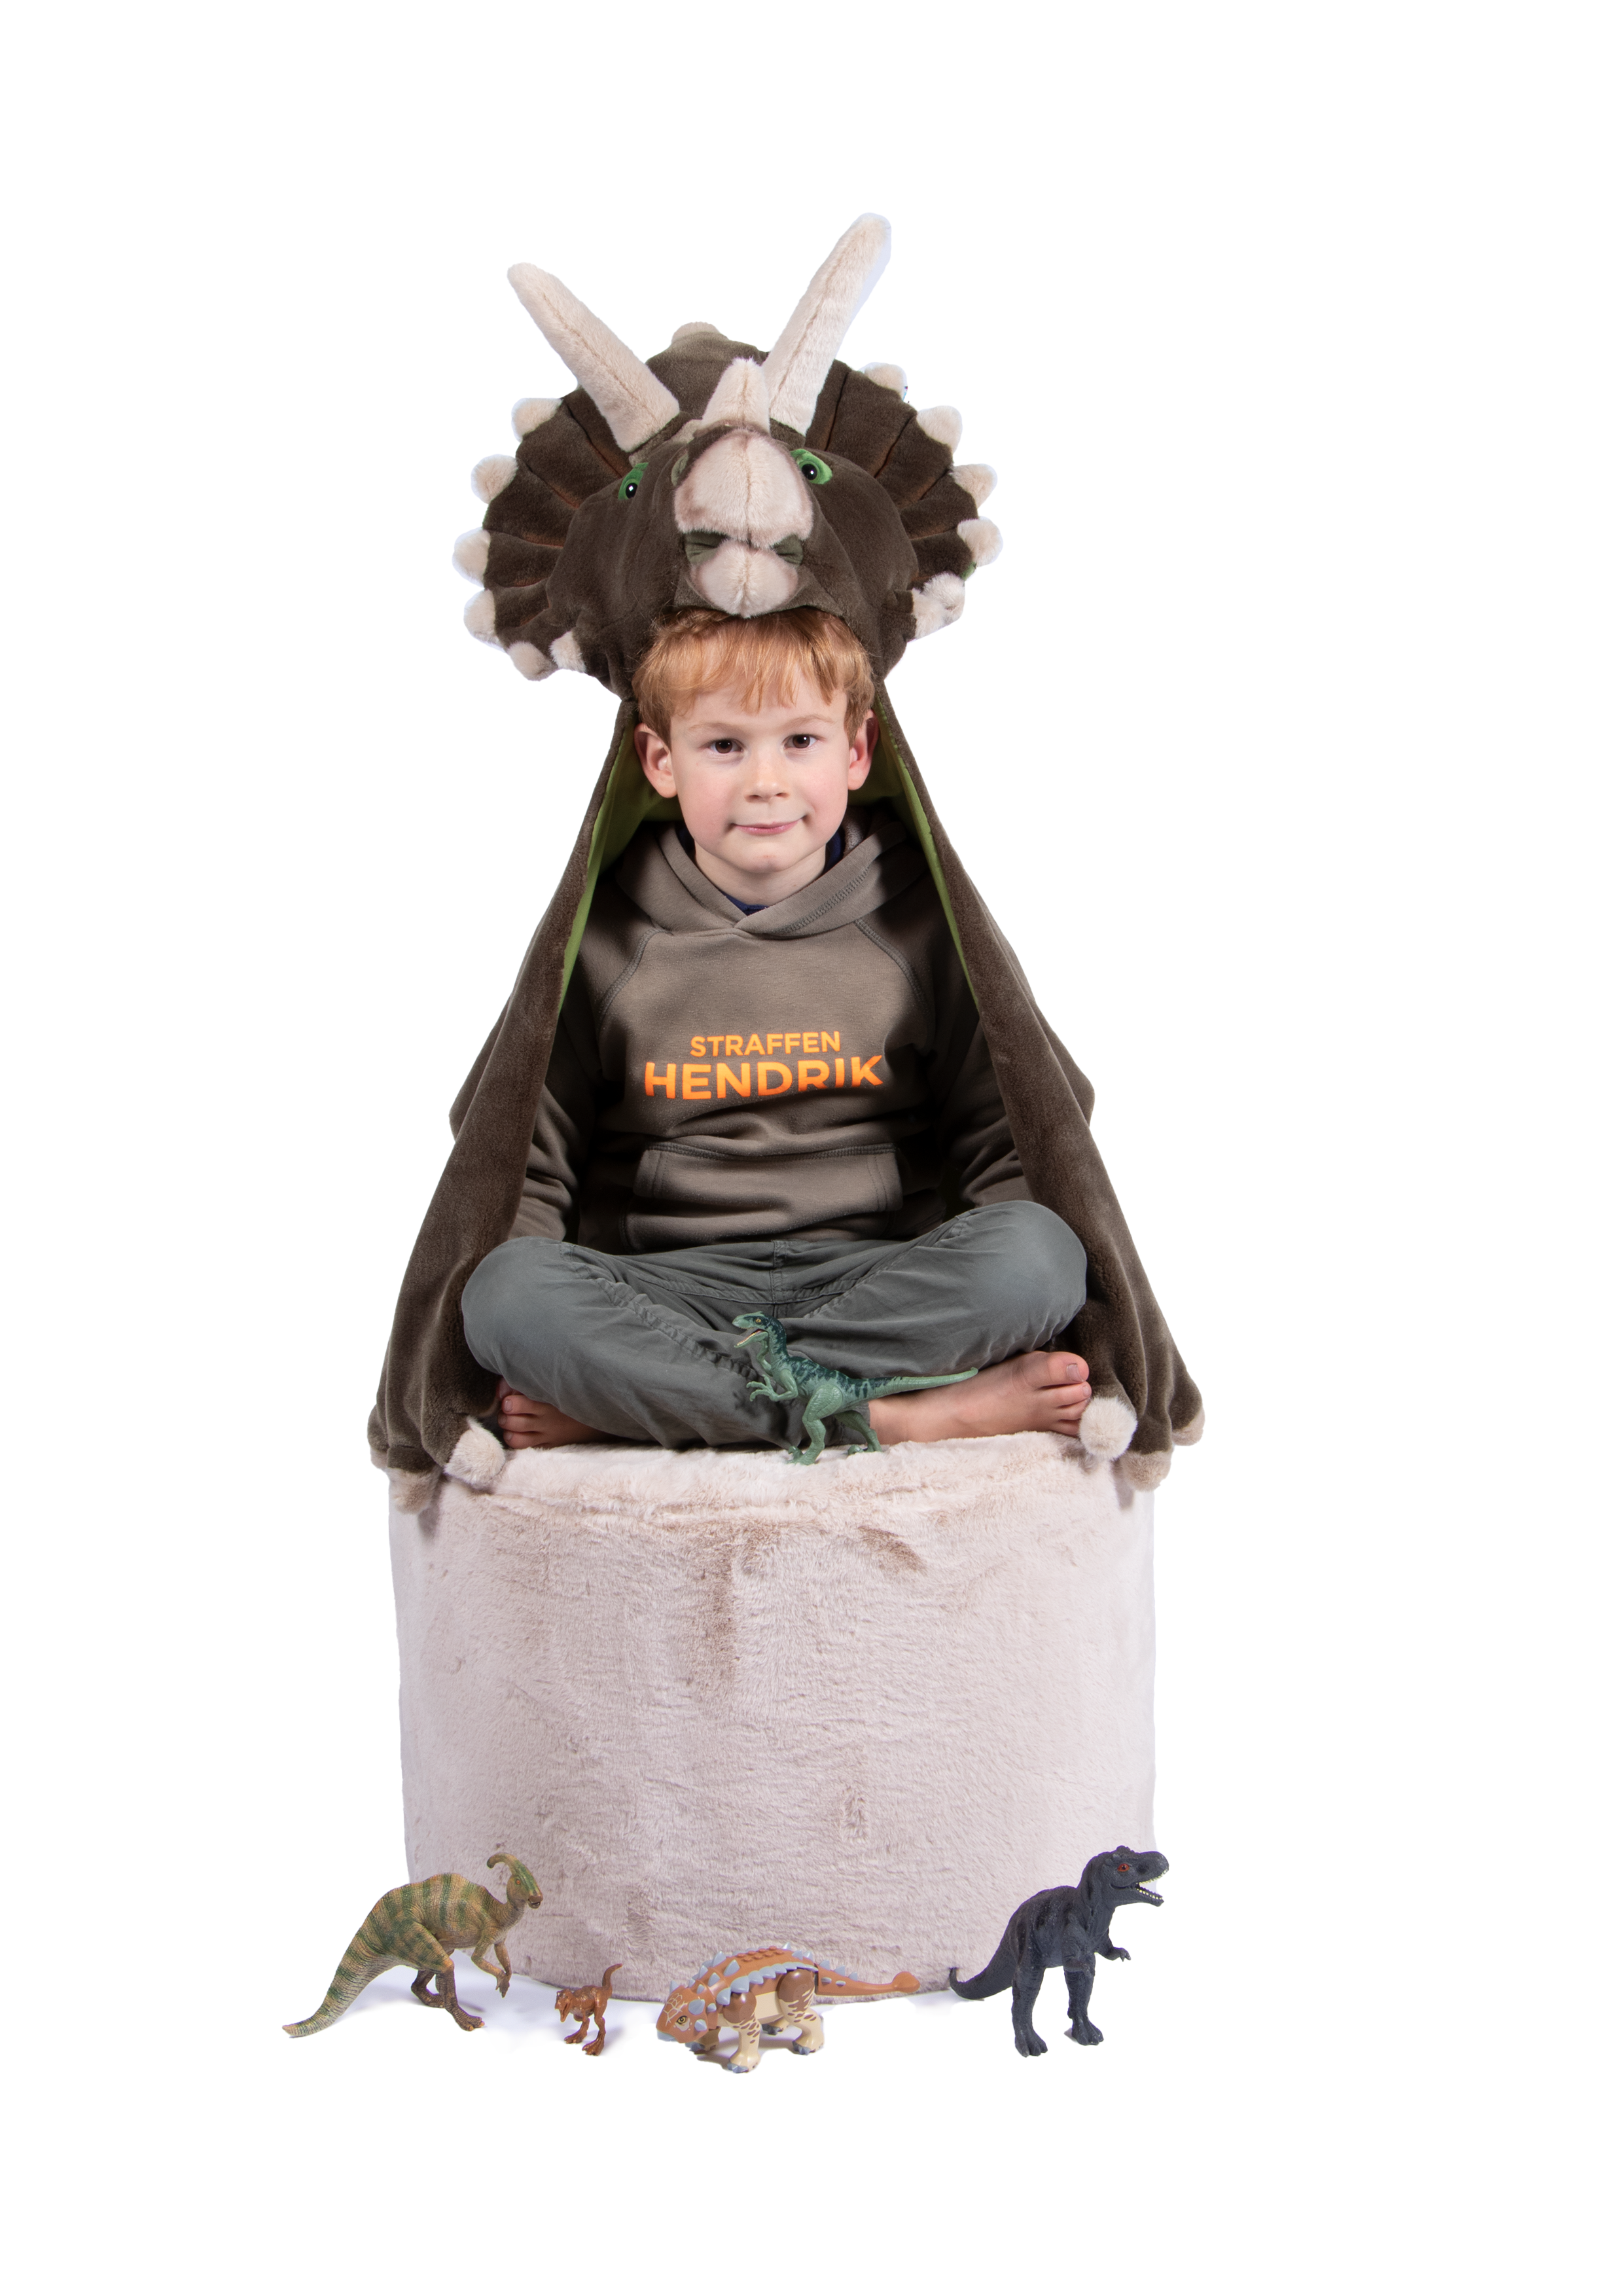 WILD&SOFT Verzaubere dein inneres Kind mit unserem Dinosaurier Kostüm aus hochwertigem Kunstpelz! 🦕💫 Tauche ein in die Welt der Dinosaurier und erlebe stundenlange Abenteuer und Gemütlichkeit! 🌟💚